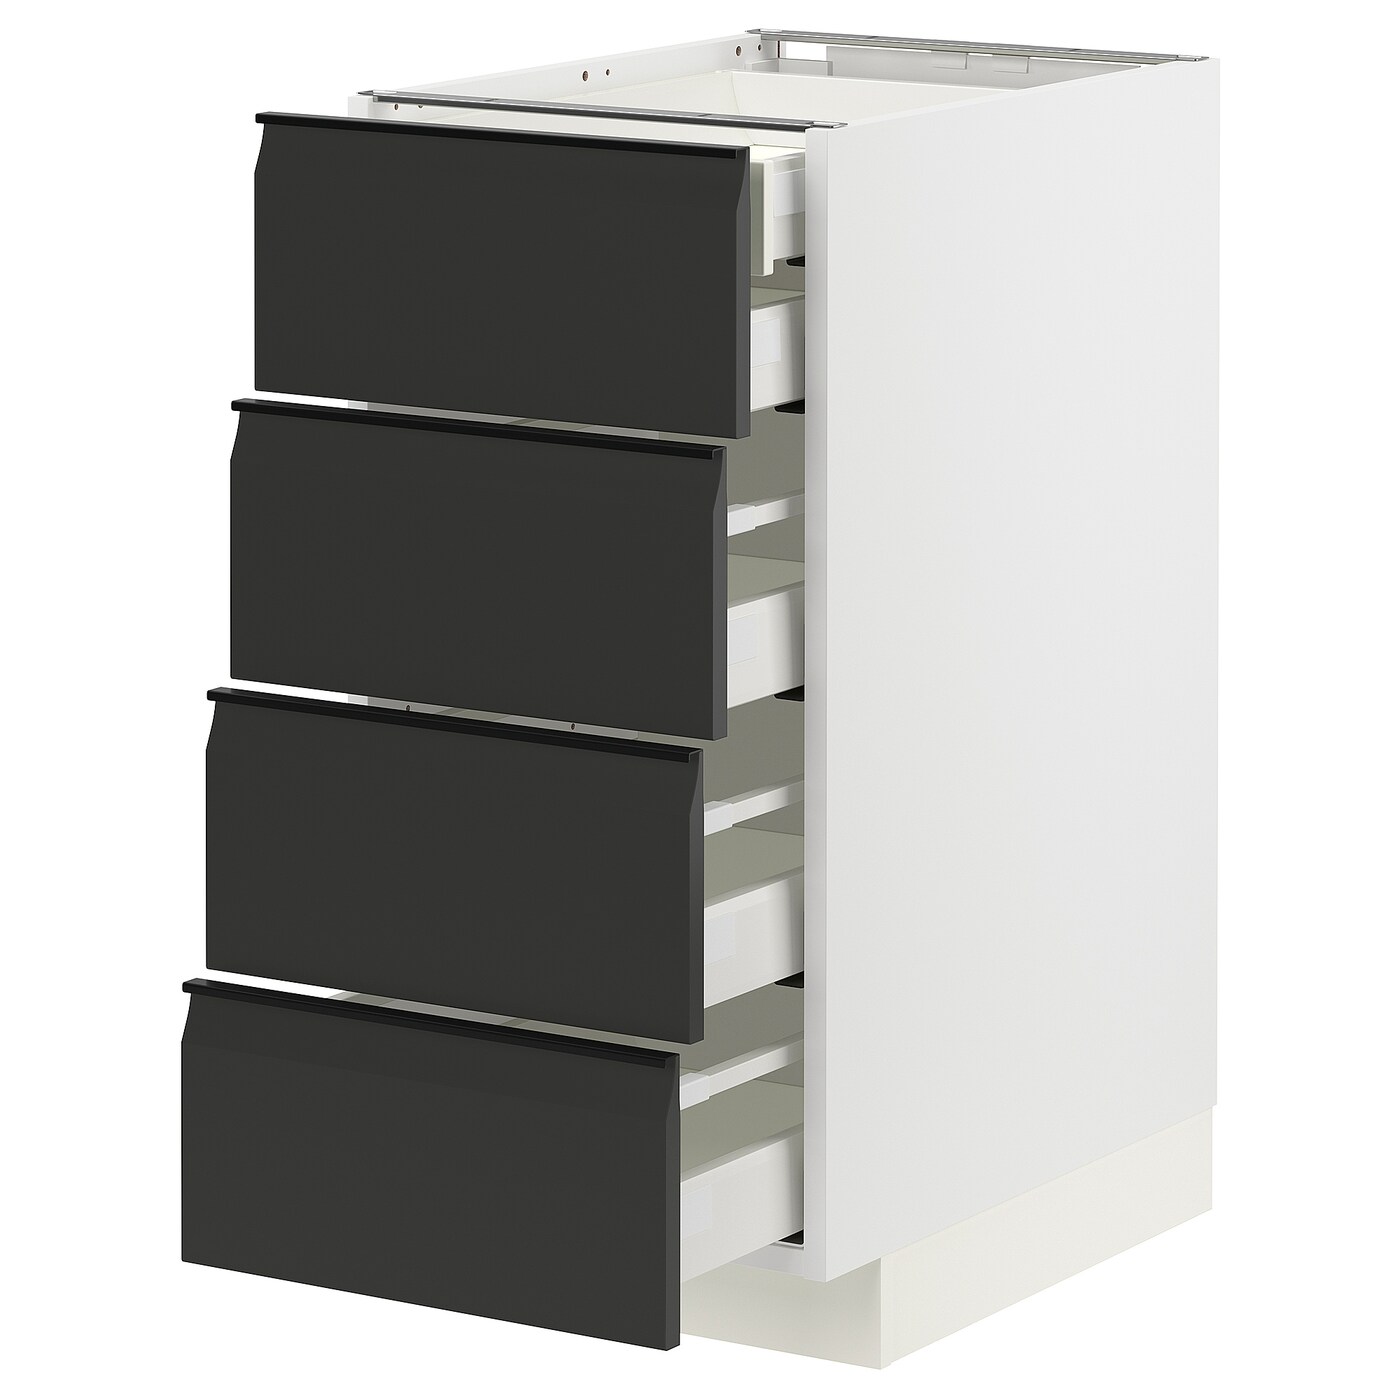 Напольный шкаф  - IKEA METOD MAXIMERA, 88x61,6x40см, белый/черный, МЕТОД МАКСИМЕРА ИКЕА